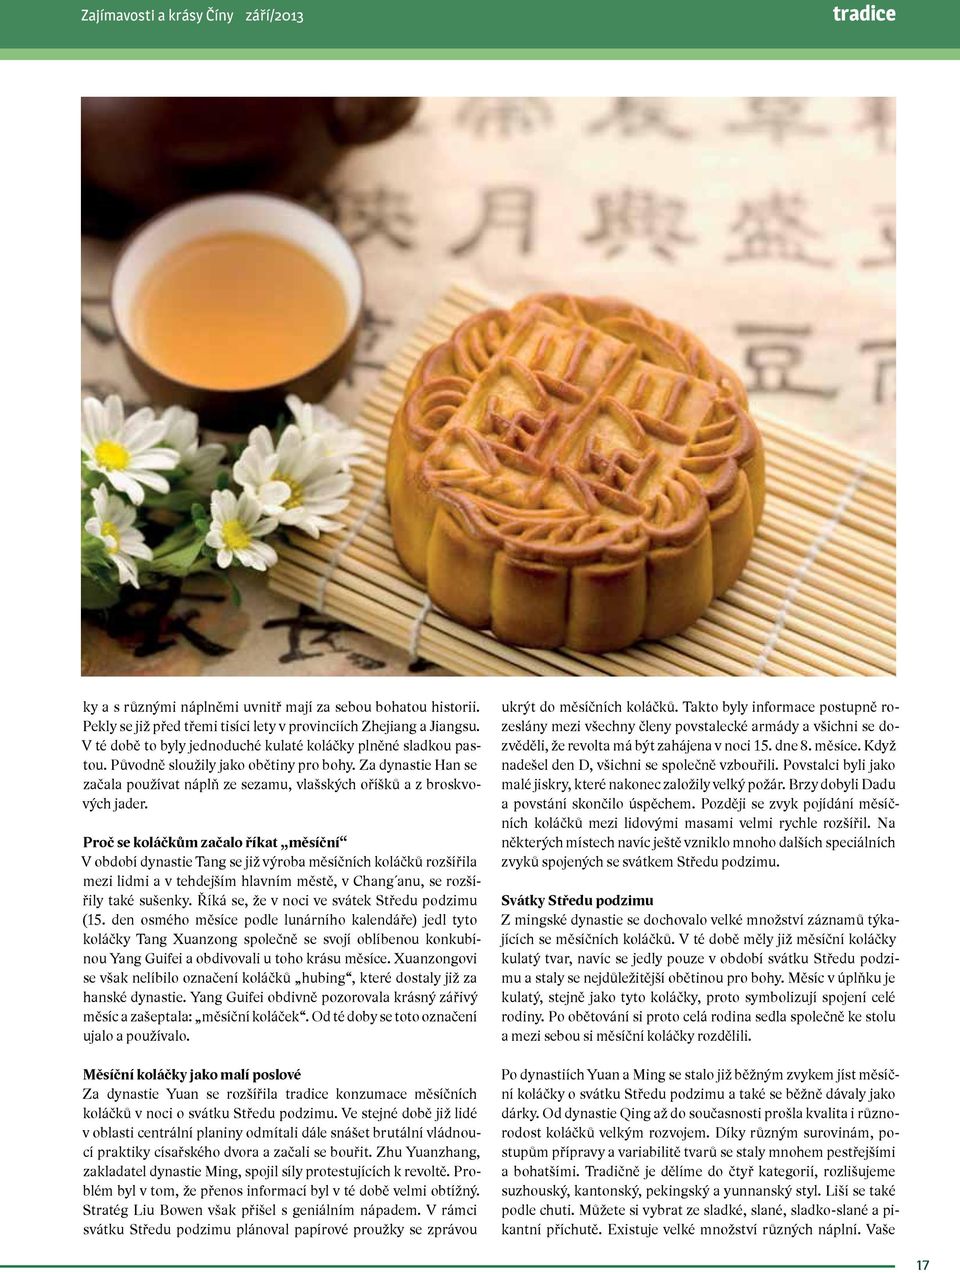 Proč se koláčkům začalo říkat měsíční V období dynastie Tang se již výroba měsíčních koláčků rozšířila mezi lidmi a v tehdejším hlavním městě, v Chang anu, se rozšířily také sušenky.